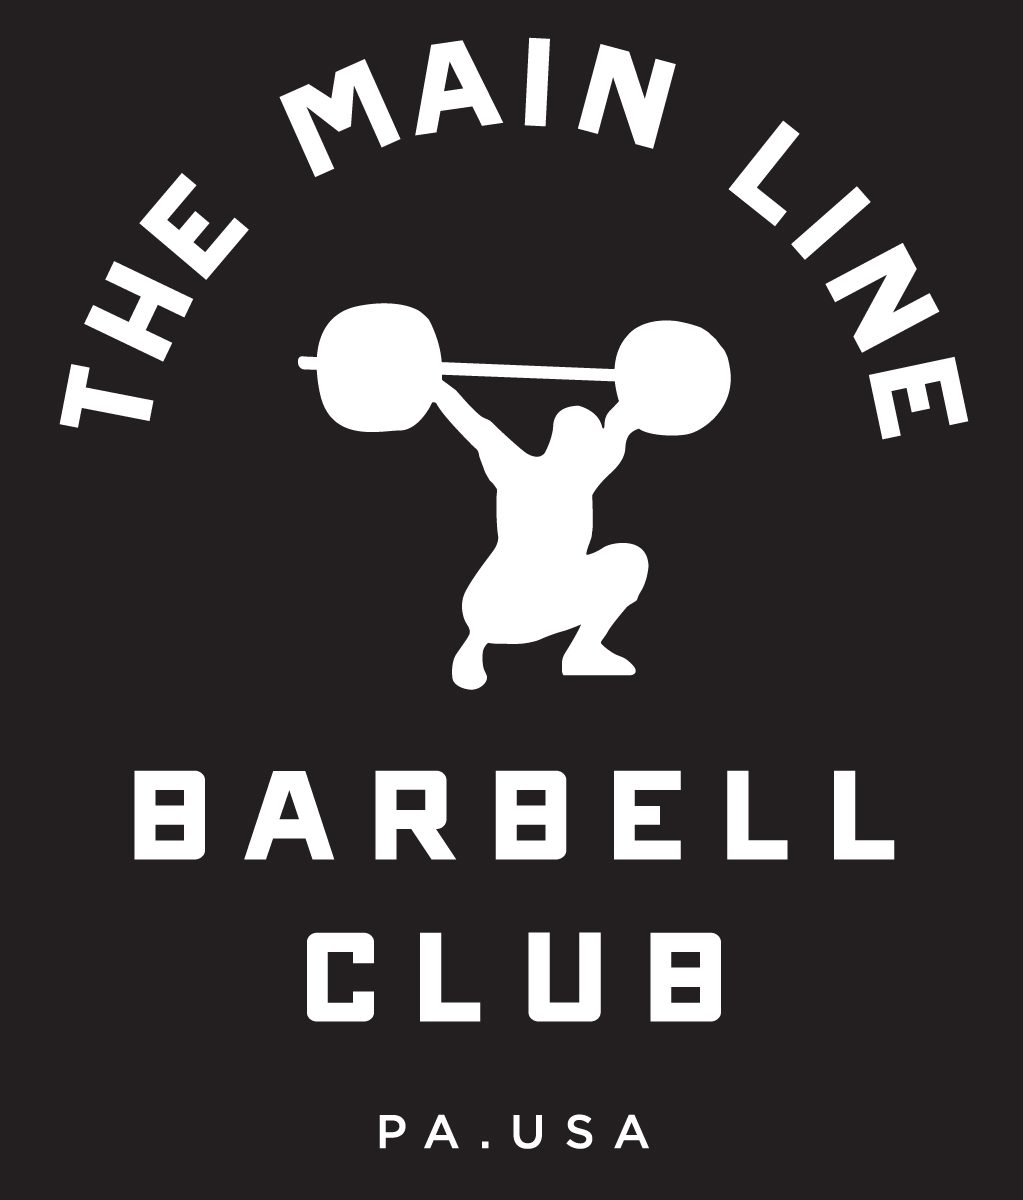 Week of 10.3.16 Barbell Club